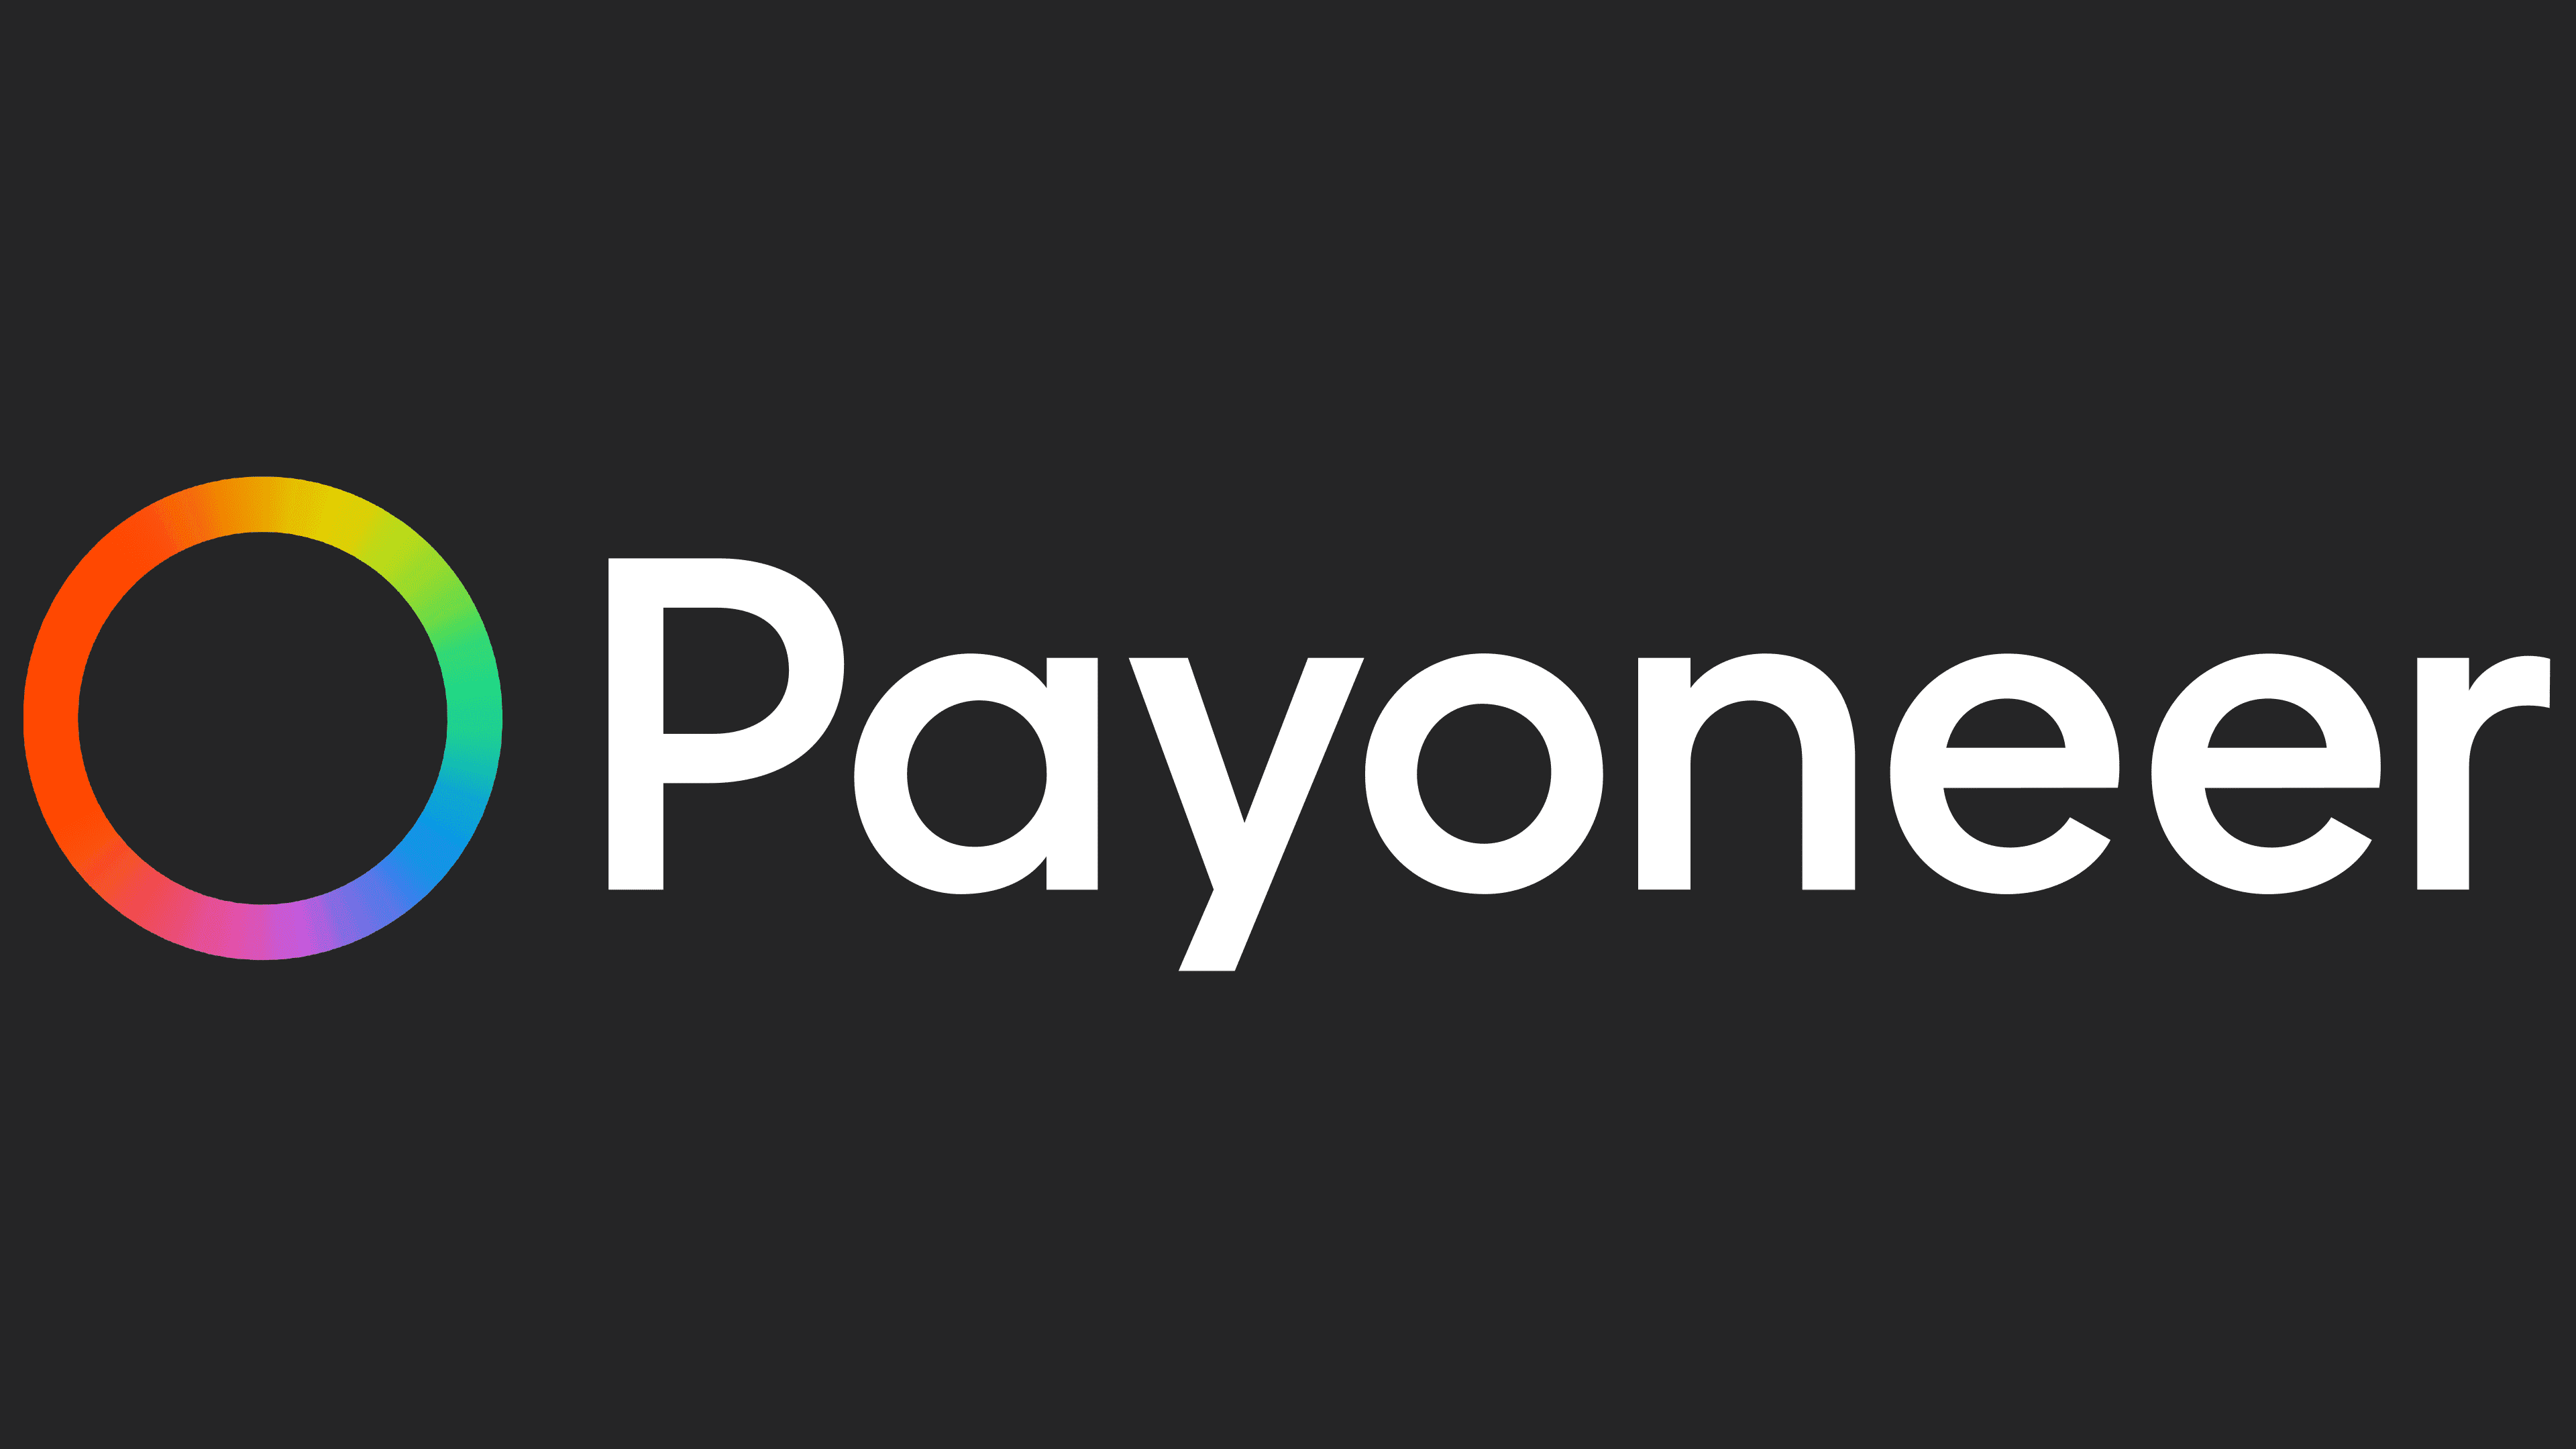 Payoneer has changed its visual identity